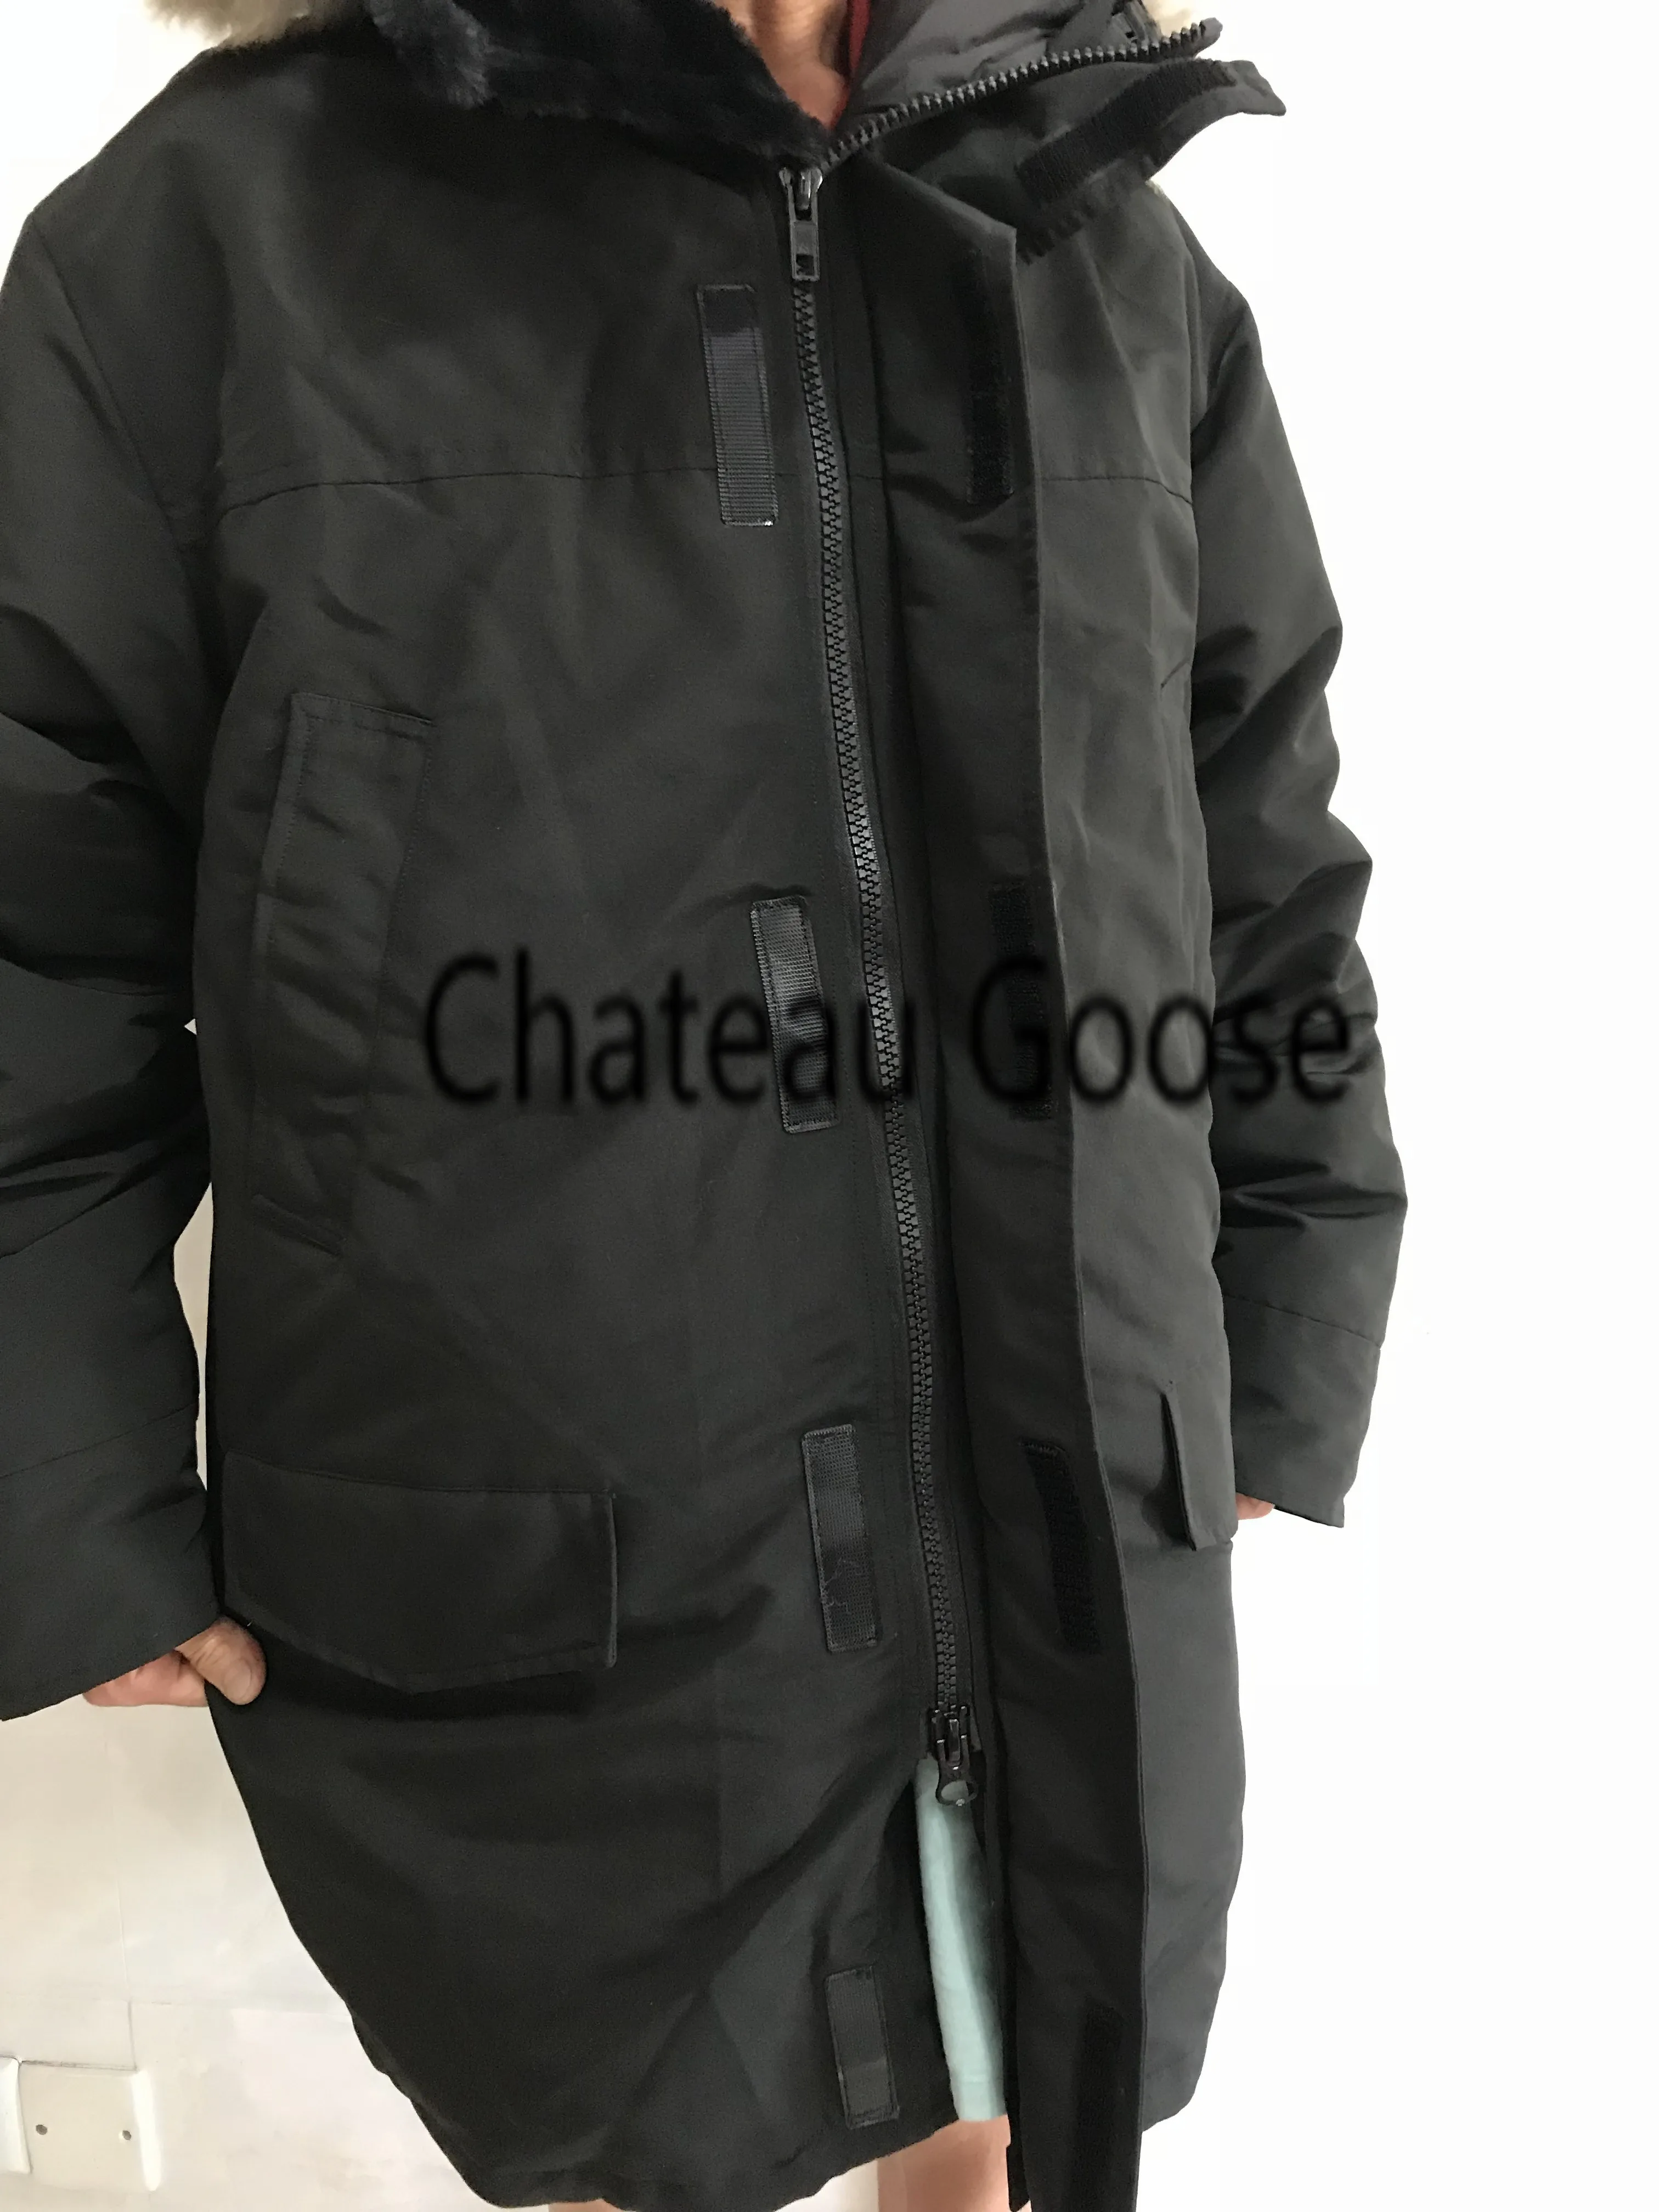 Chateau куртка на гусином пуху Мужская зимняя Fourrure мужская куртка-парка Jassen большой меховой с капюшоном Fourrure Manteau пуховик пальто Hiver Doudoune